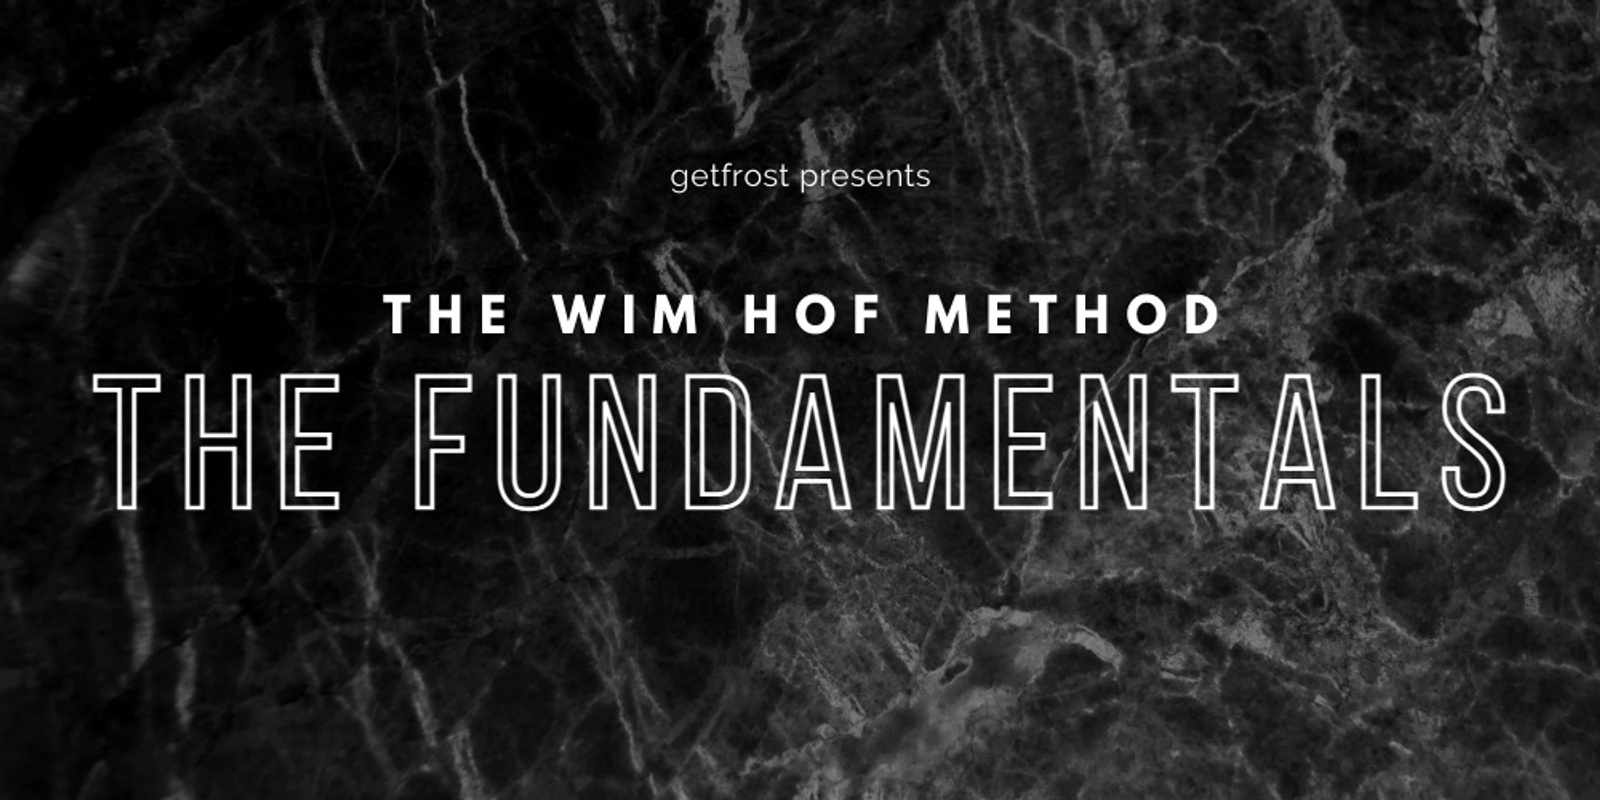 Banner image for Wim Hof Method - Fundamentals Workshop, Somers 